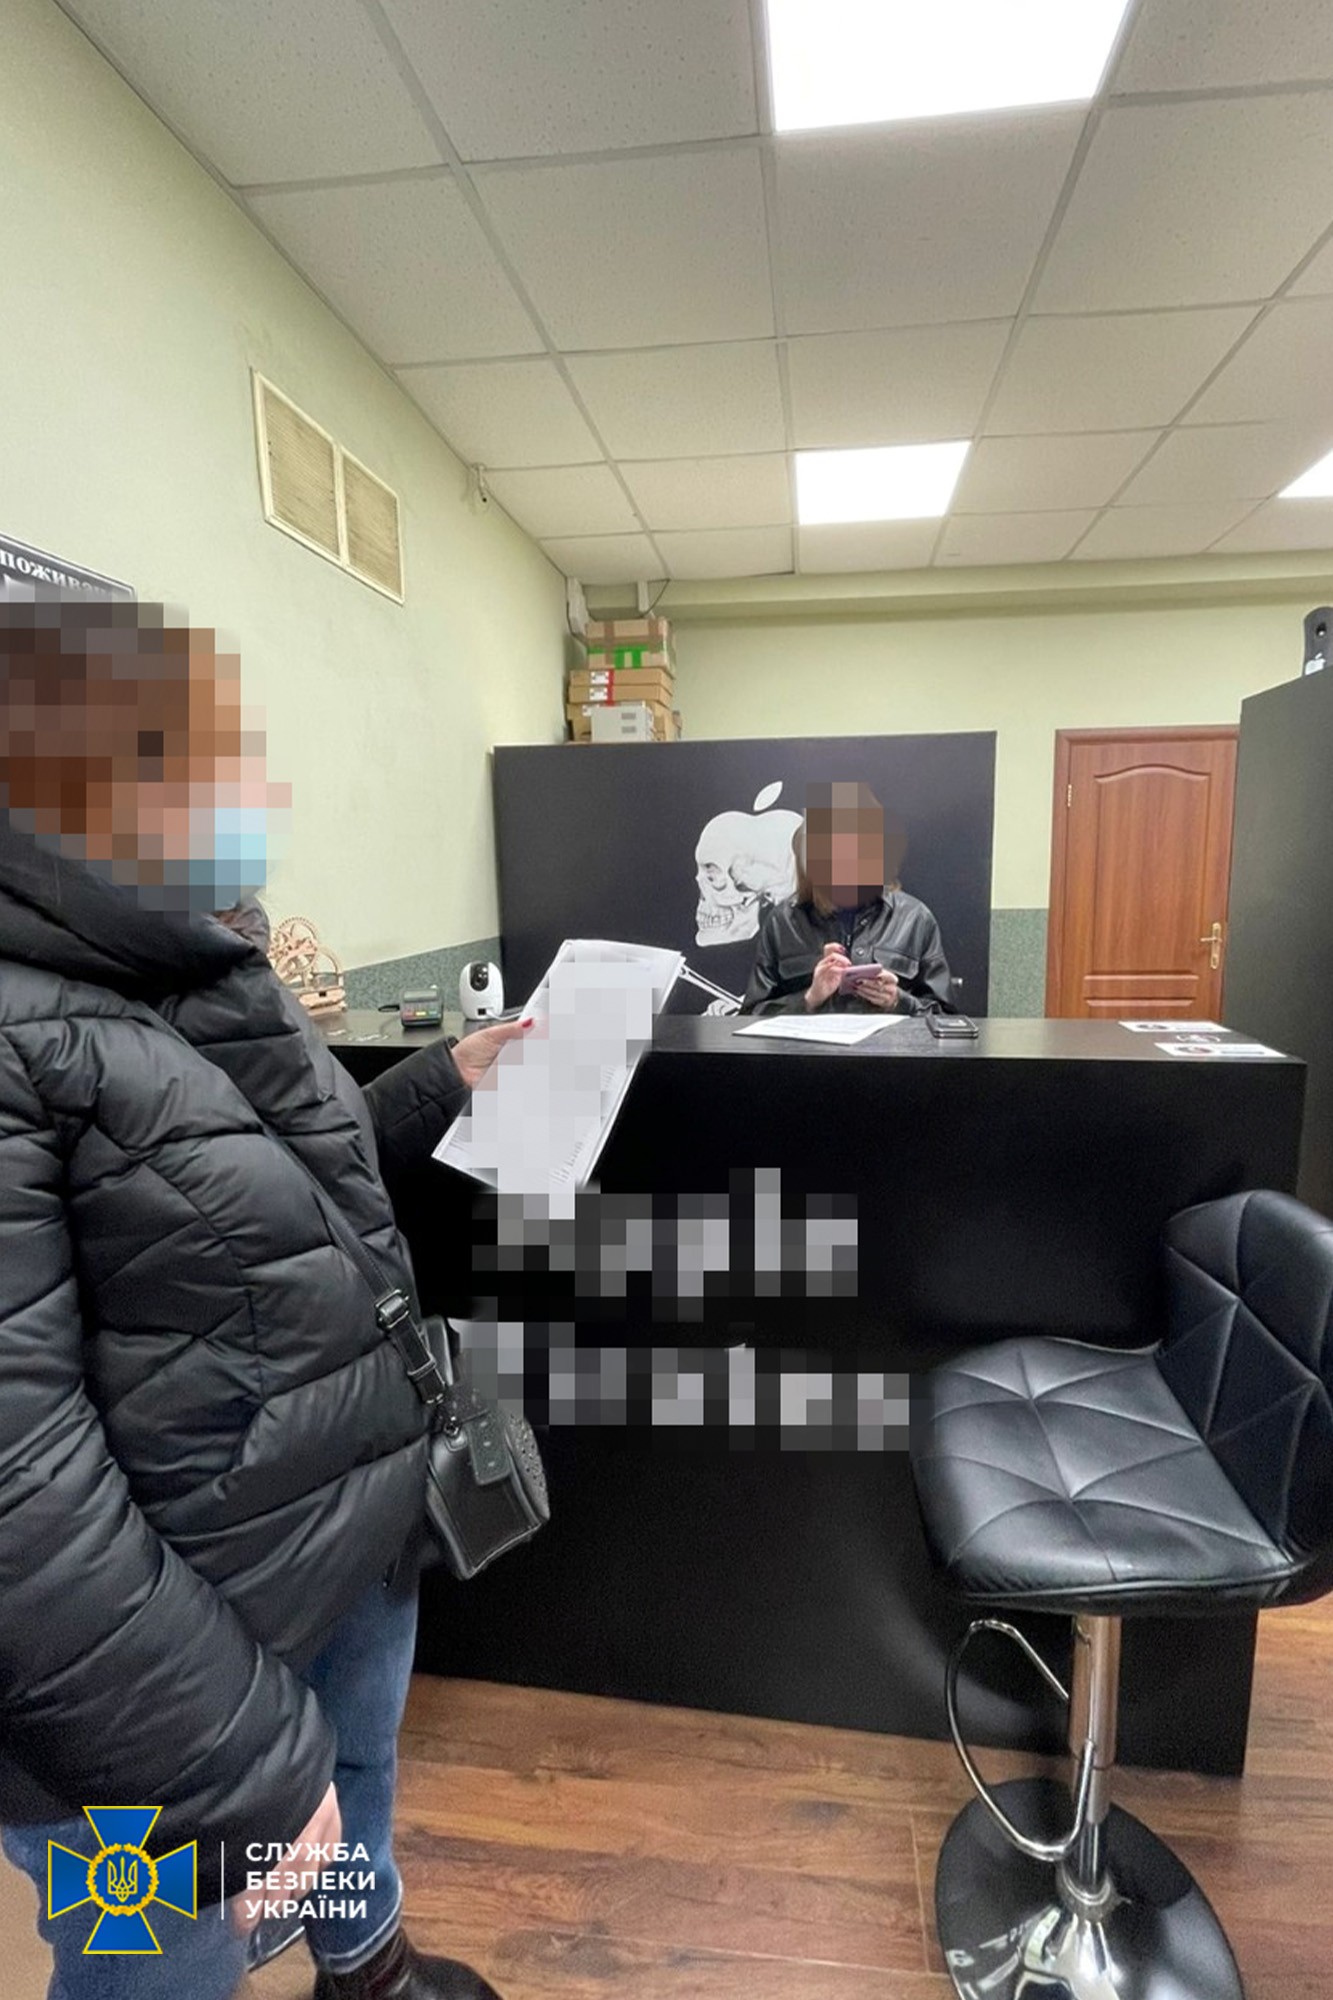 Харьковские программисты были задействованы в хакерской схеме — СБУ